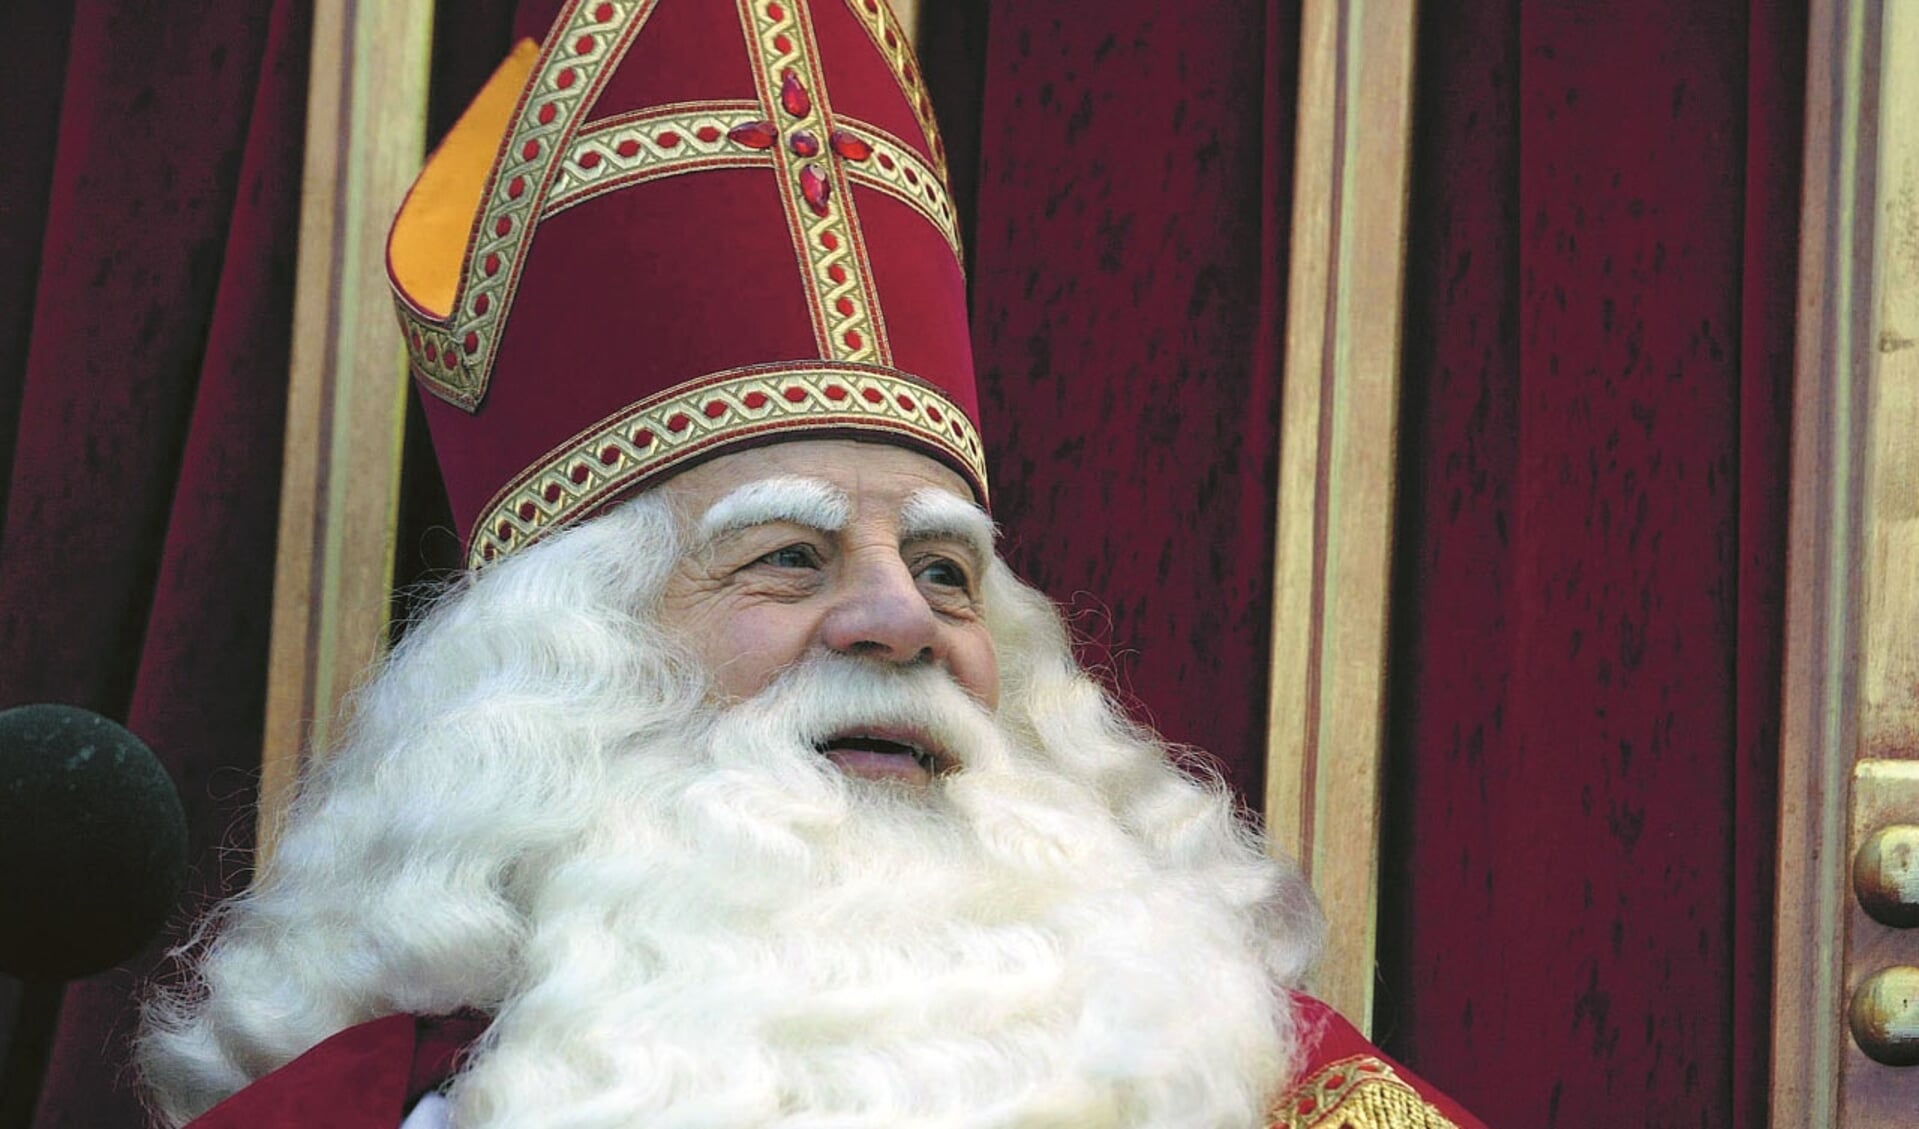 Bij wie komt Sinterklaas persoonlijk langs in Koggenland?